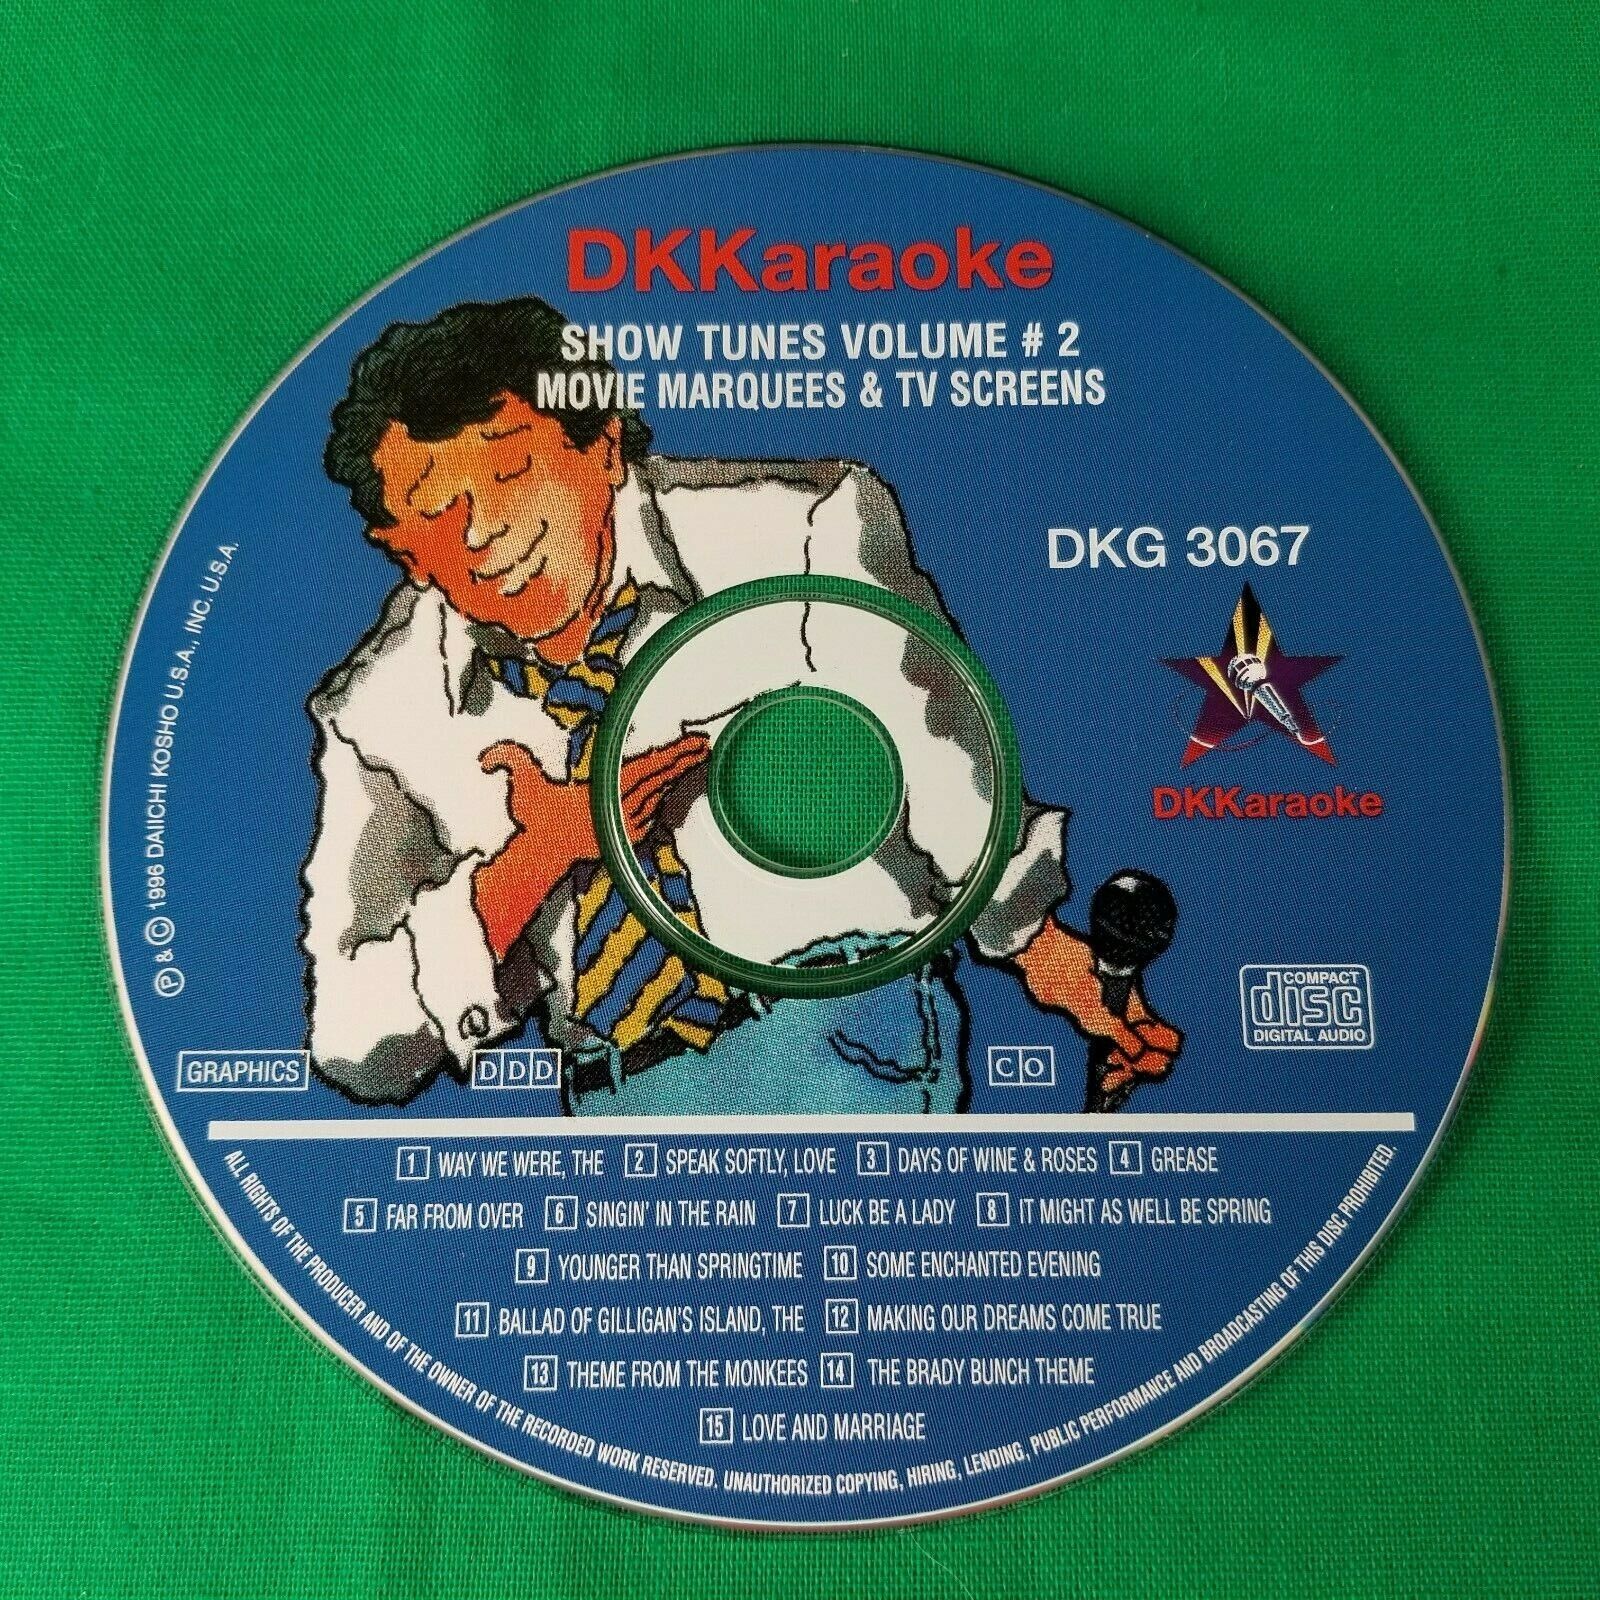 Lot of 2 DKKaraoke Show Tunes Volume 1 & 2 - 3066, 3067 - Pre-owned DK Karaoke - фотография #3